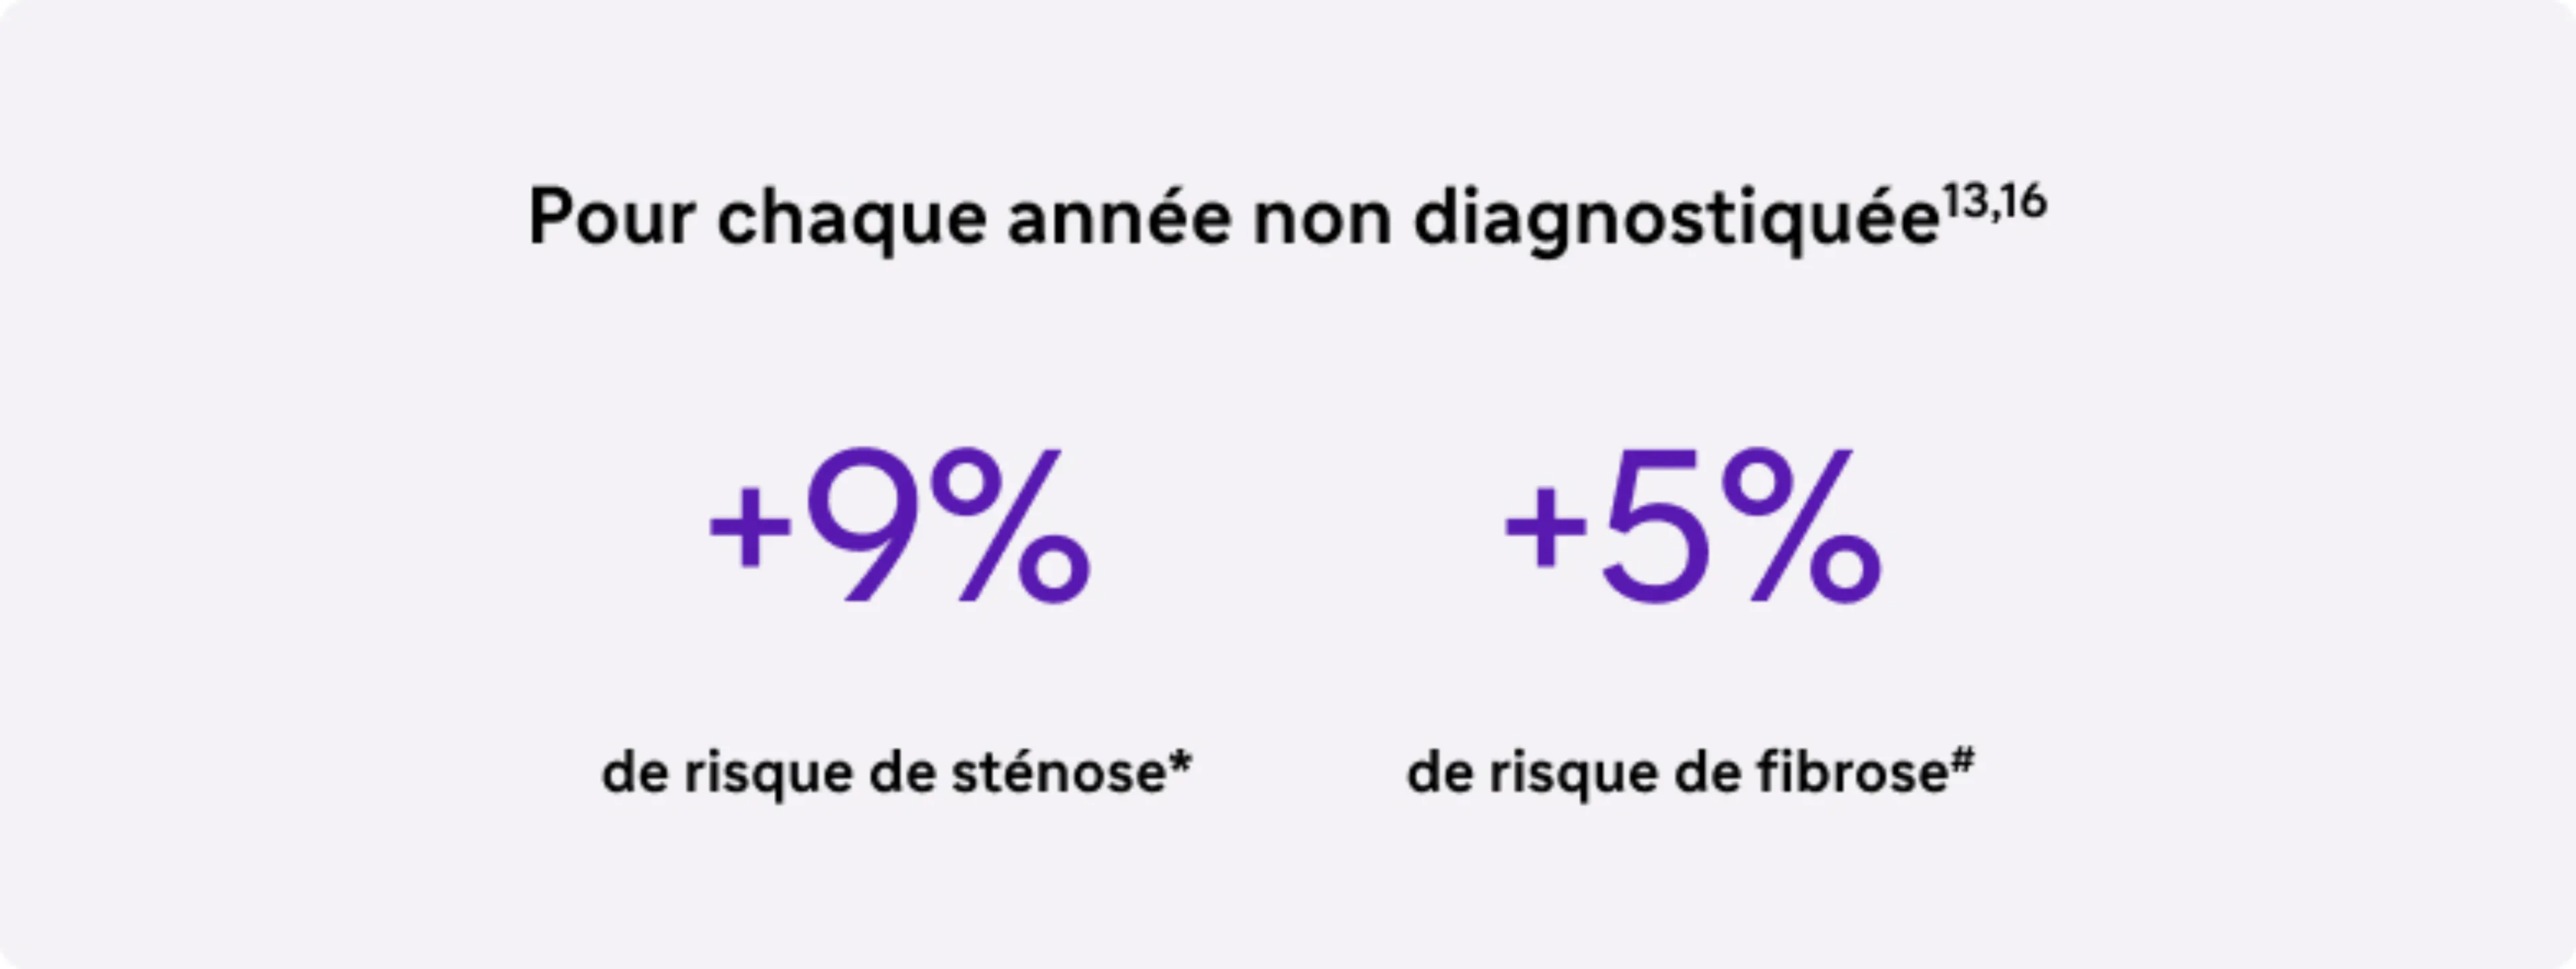 Carte 1 "+9% de risque de sténose, +5% risque de fibrose"